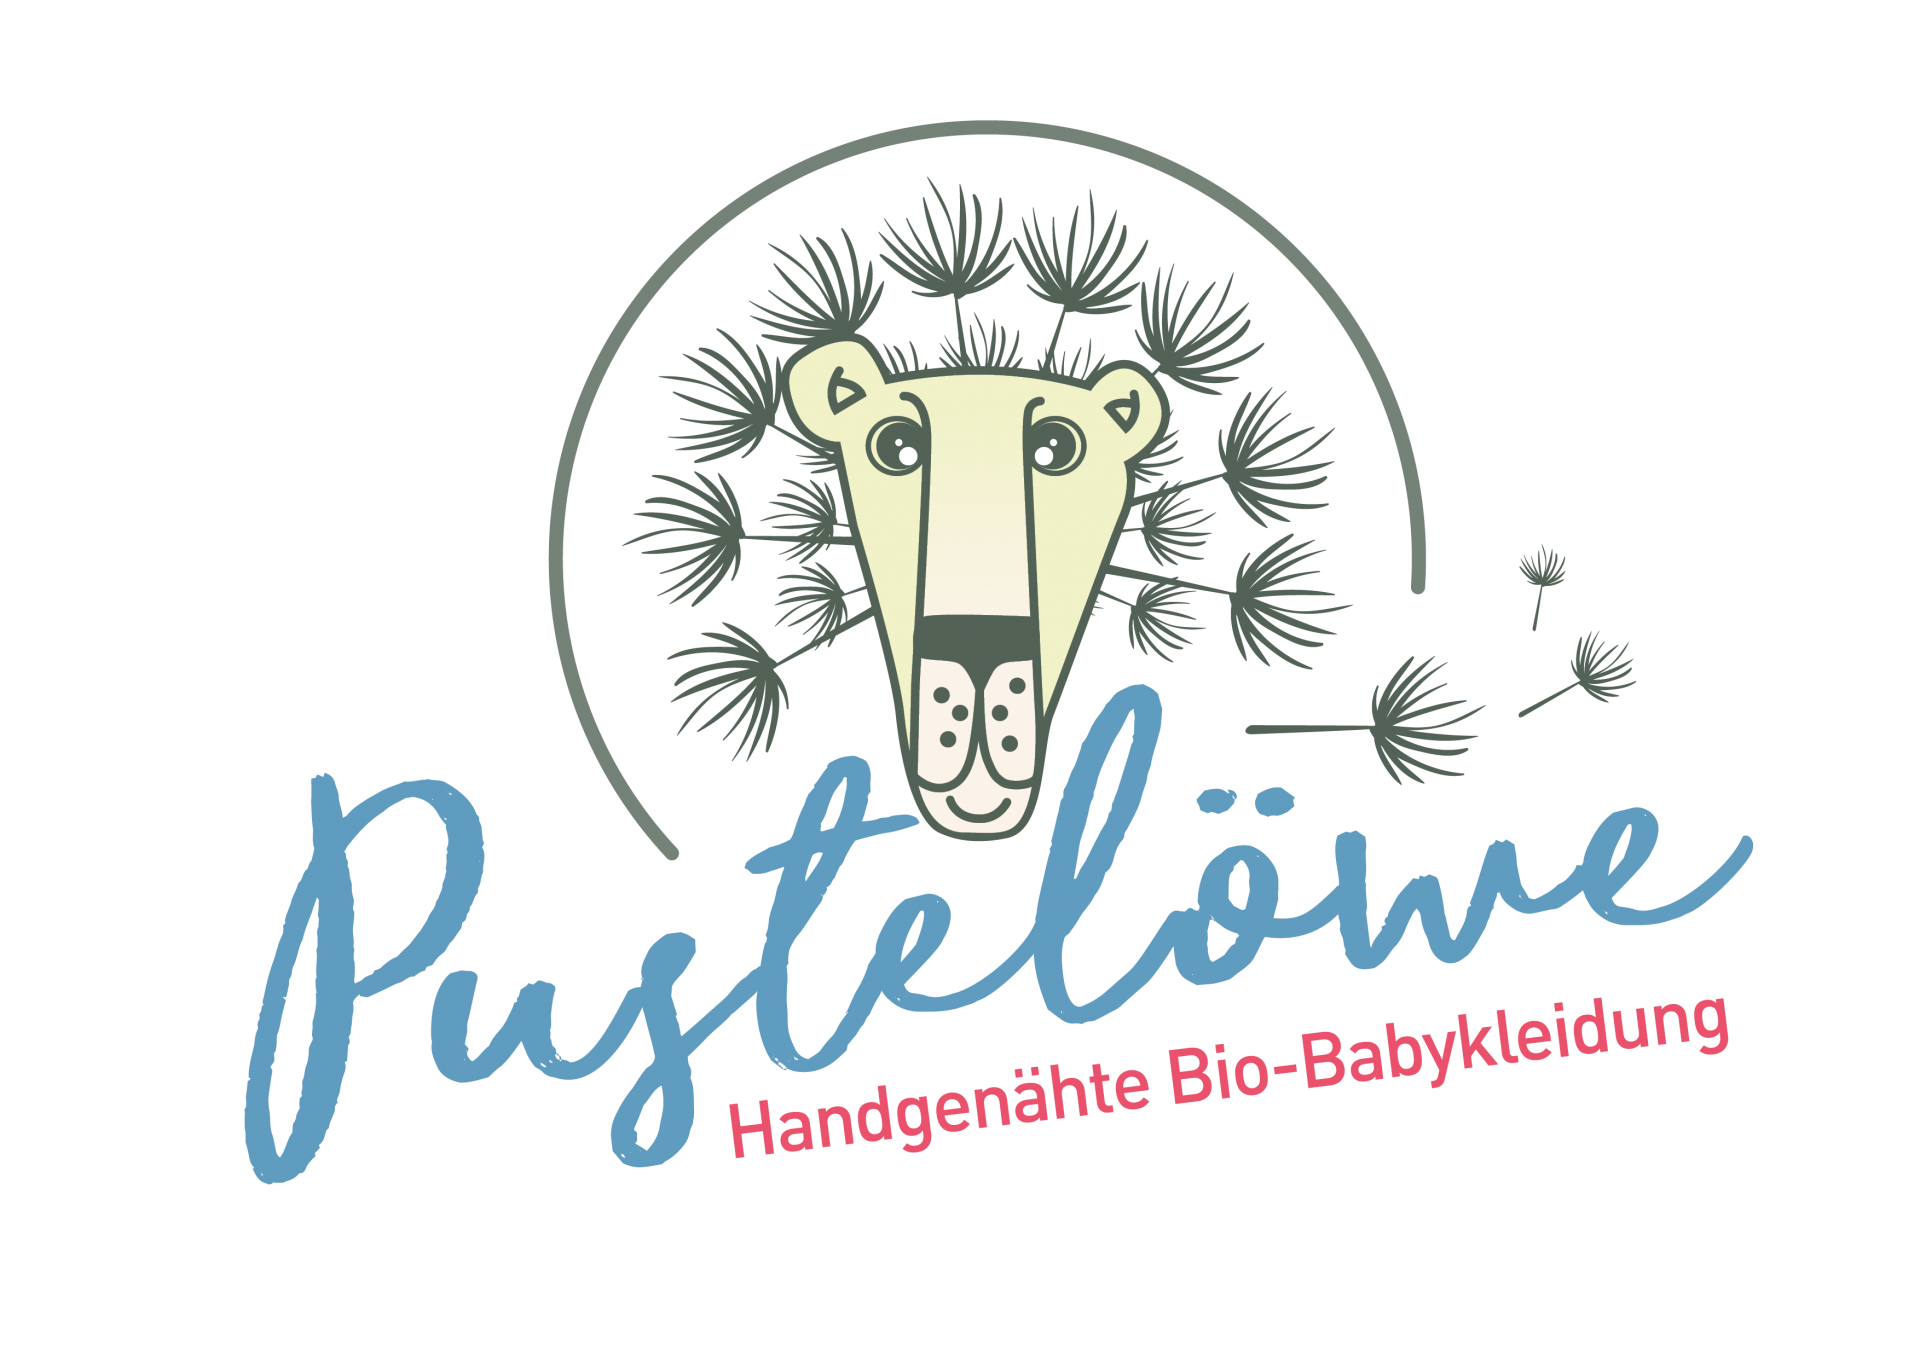 Pusteloewe_Logo